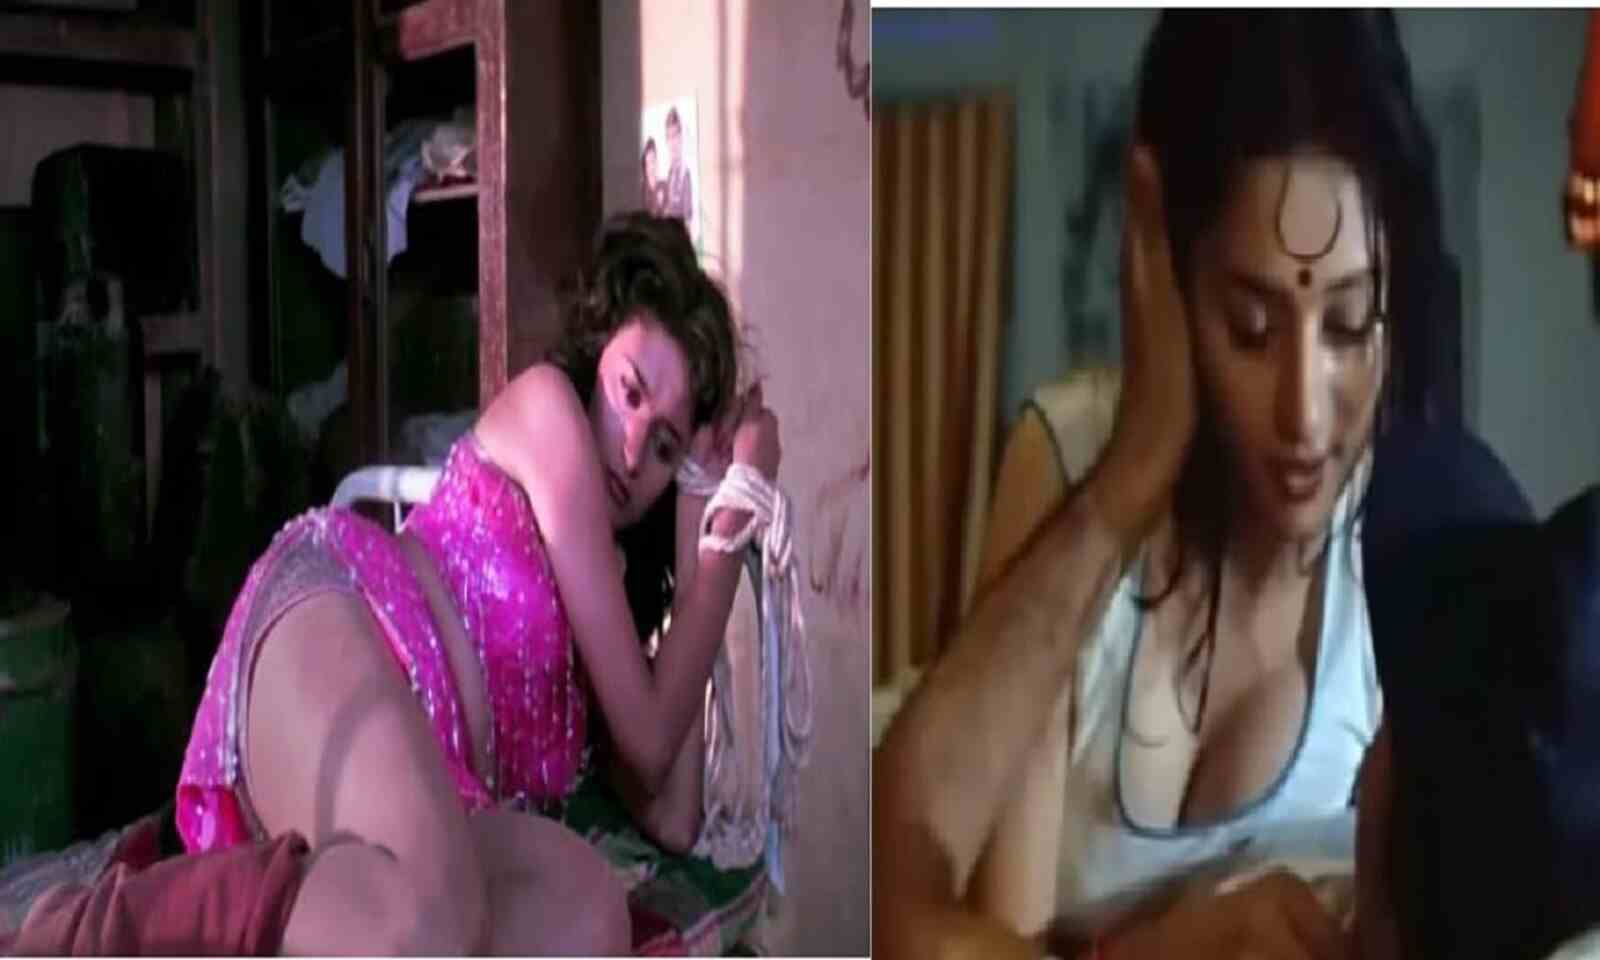 Actress Madhuri Dixit Ki Nangi Xxx Video - Madhuri Dixit à¤•à¥€ à¤µà¥‹ à¤—à¤¨à¥à¤¦à¥€ à¤¤à¤¸à¥à¤µà¥€à¤°à¥‡à¤‚ à¤œà¥‹ à¤‰à¤¨à¤•à¥€ à¤œà¤¿à¤‚à¤¦à¤—à¥€ à¤•à¥‡ à¤²à¤¿à¤ à¤¦à¤¾à¤— à¤¬à¤¨ à¤—à¤ˆ, à¤«à¥‹à¤Ÿà¥‹  à¤¦à¥‡à¤– à¤†à¤ªà¤•à¥‹ à¤­à¥€ à¤†à¤à¤—à¥€ à¤—à¥à¤¸à¥à¤¸à¤¾ | Those dirty pictures of Mad